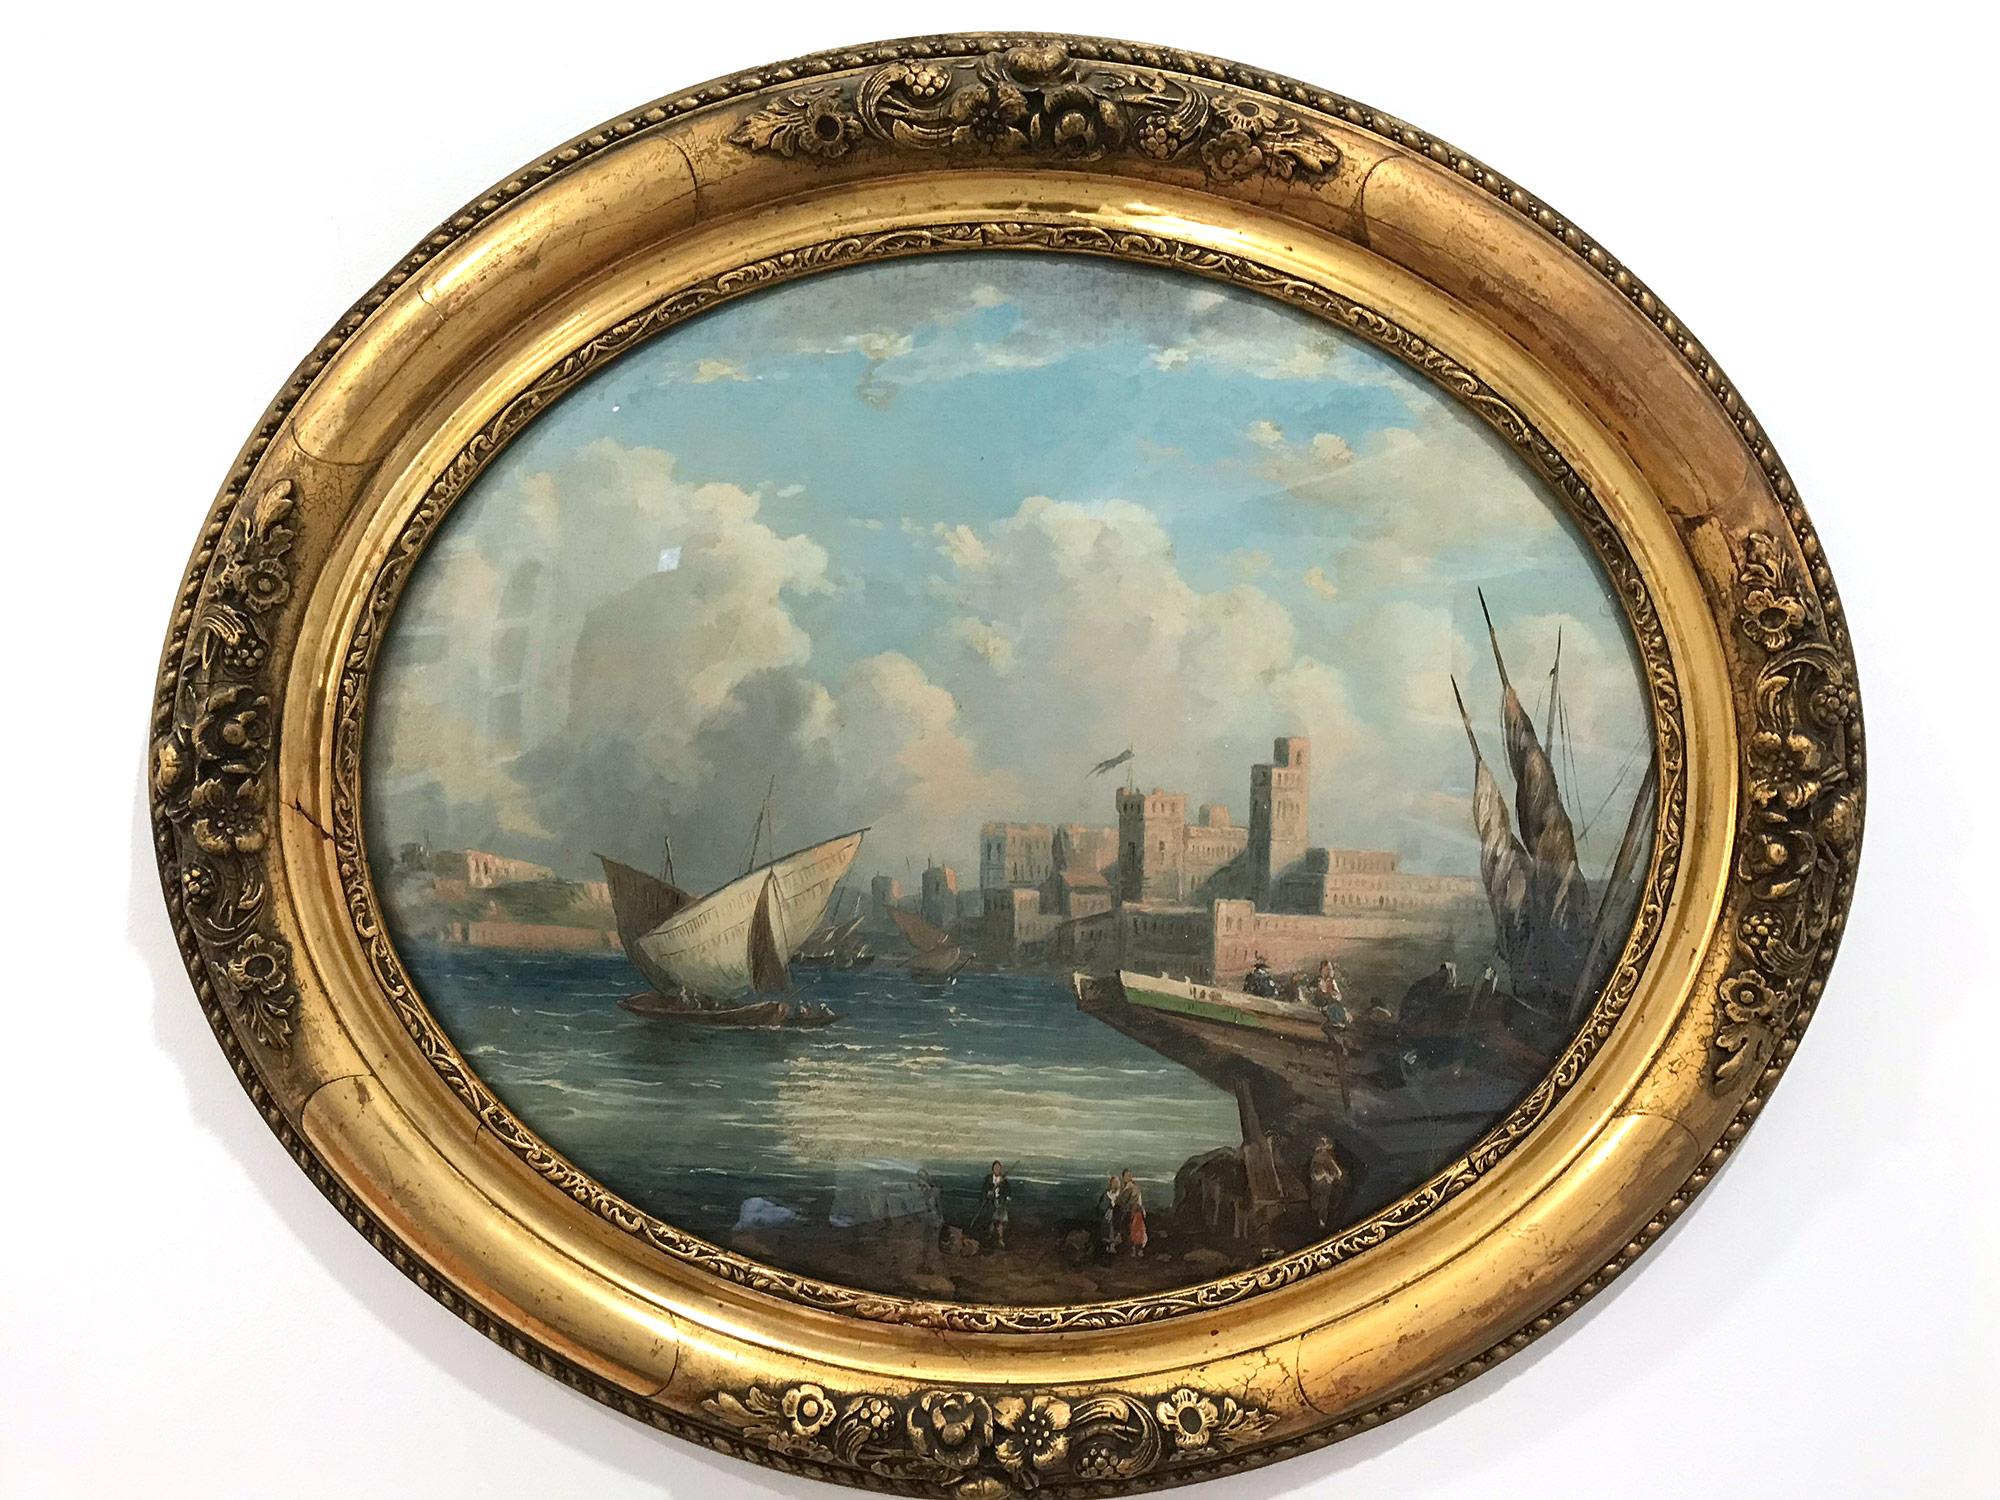 Une paire de majestueux tableaux ovales du 19ème siècle de l'école continentale avec de beaux détails partout. La scène du paysage marin est vraiment époustouflante : elle représente un château avec des personnages et des bateaux sur l'eau. La scène